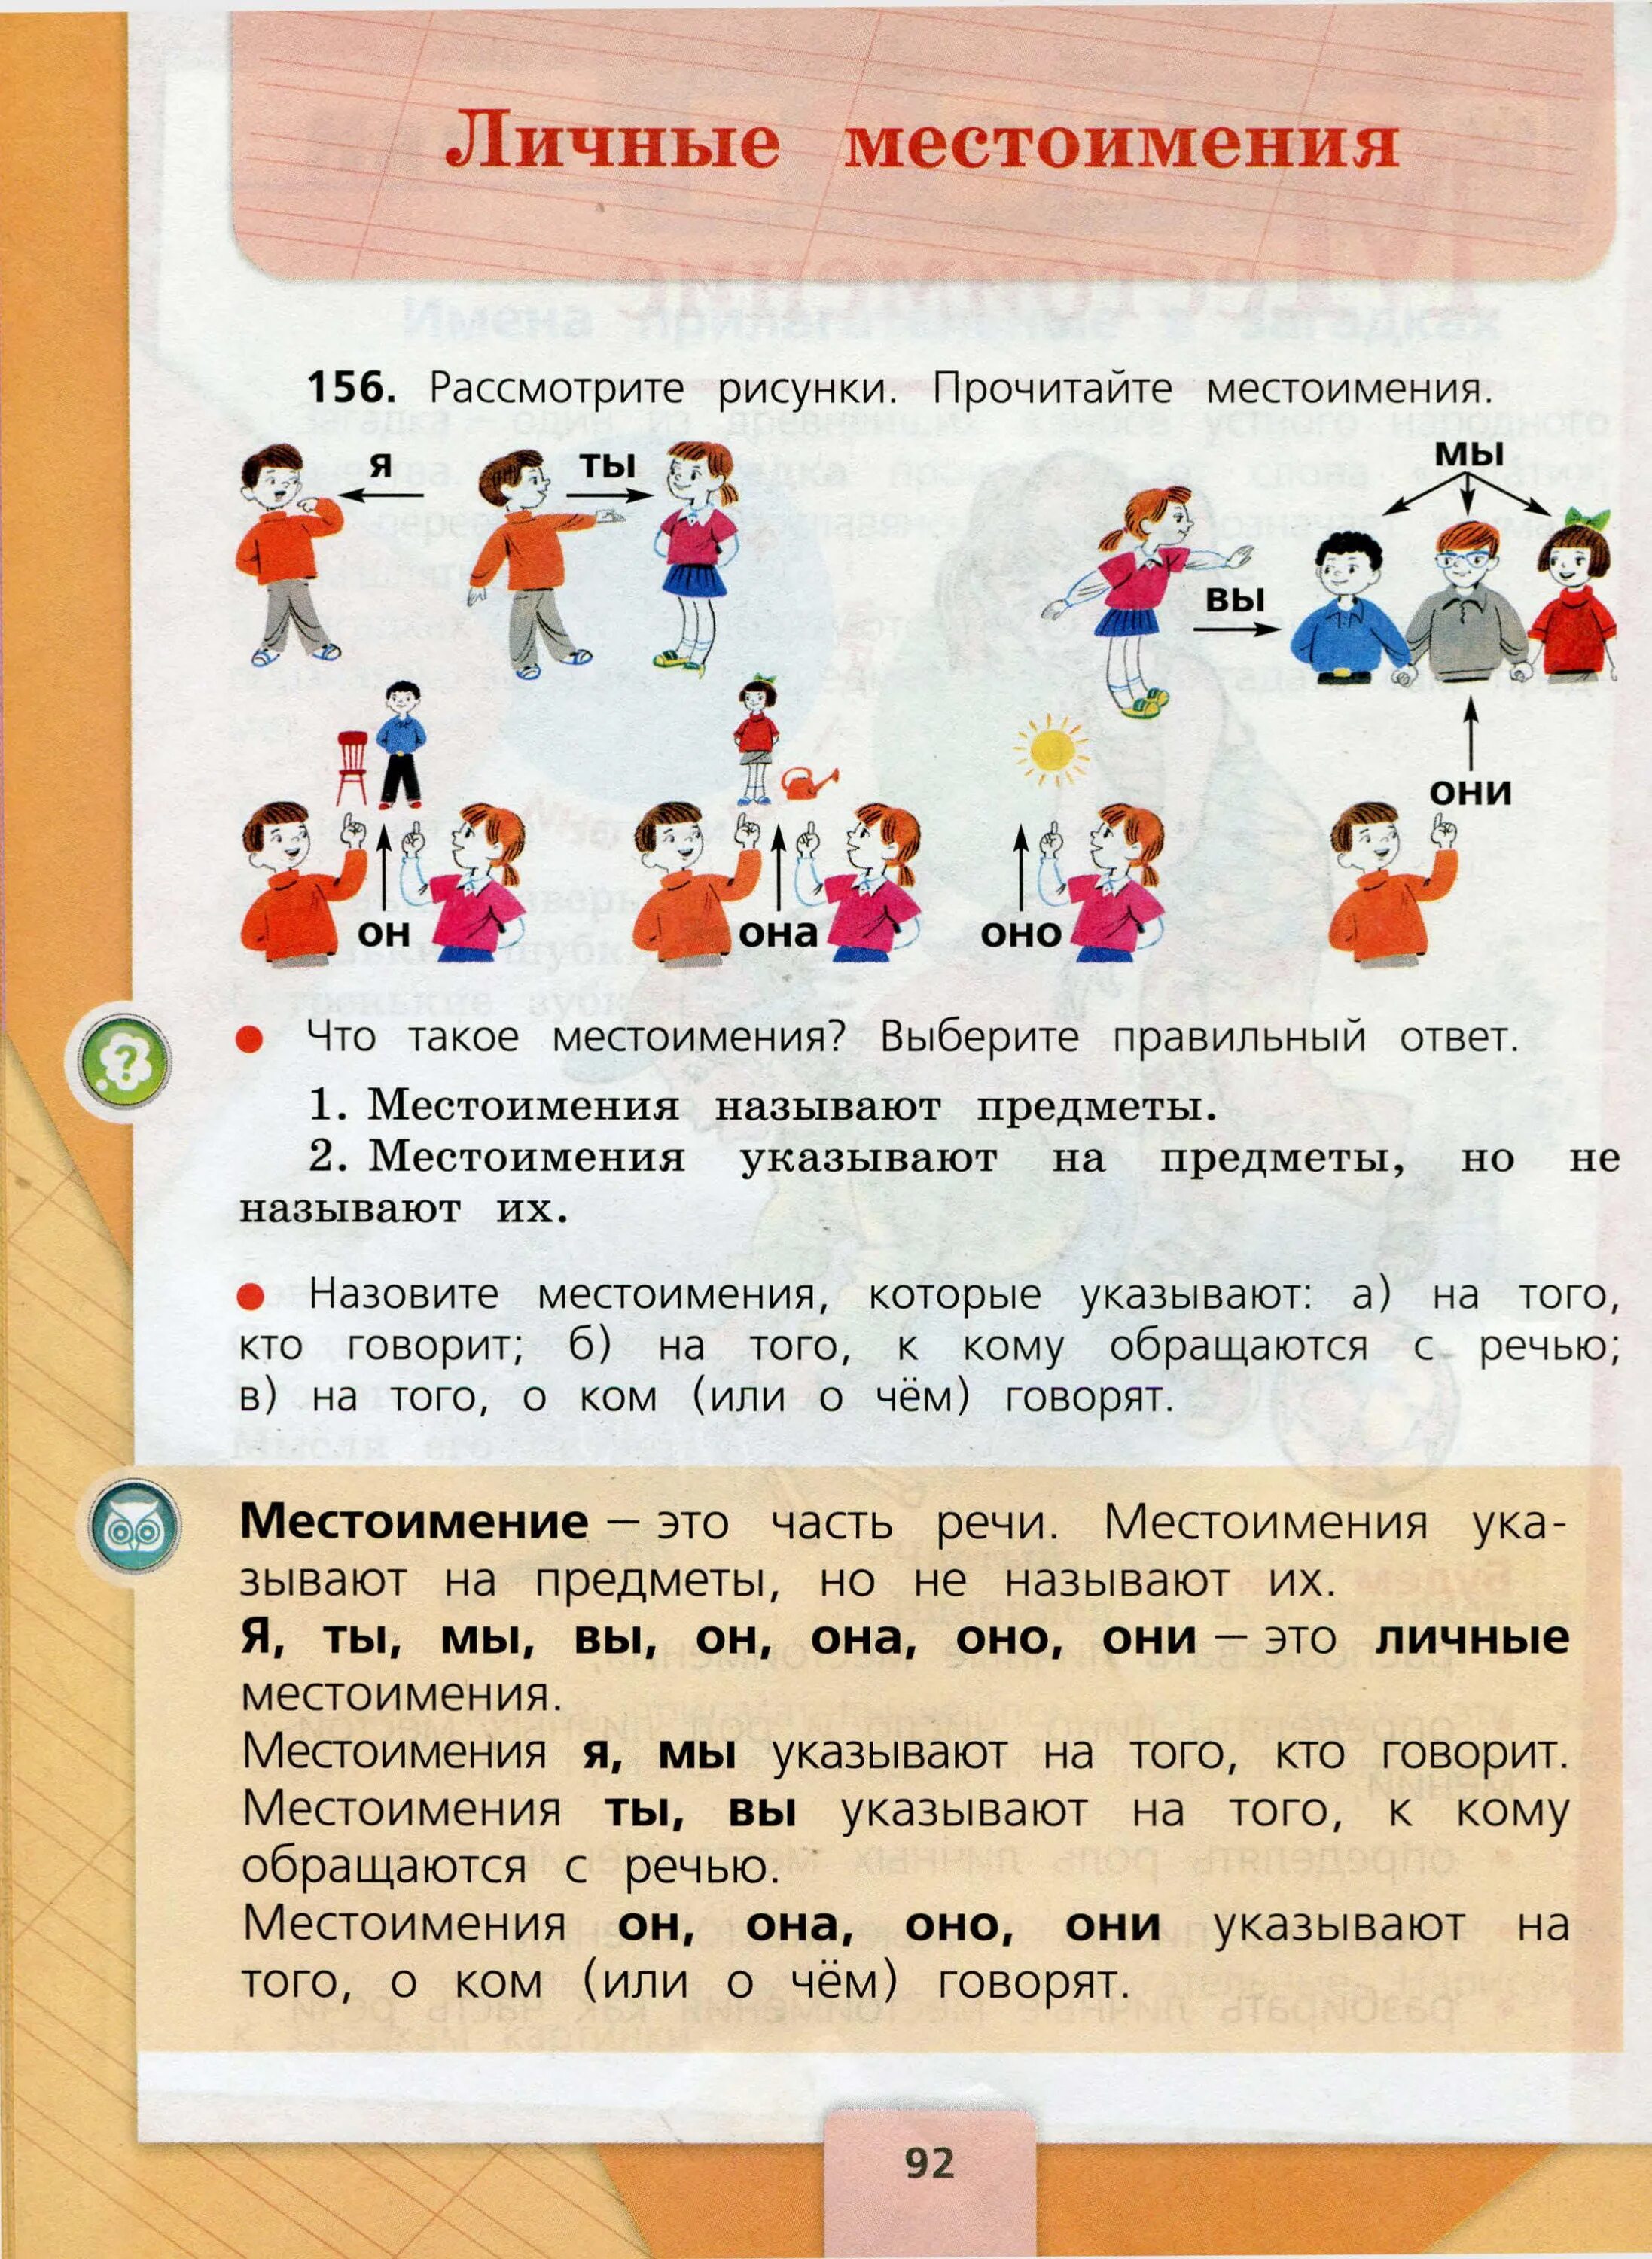 Русский язык 3 класс учебник 2 часть стр. 92. Русский язык 3 класс 2 часть. Учебник по русскому 3 класс 2 часть. Личные местоимения Канакина.